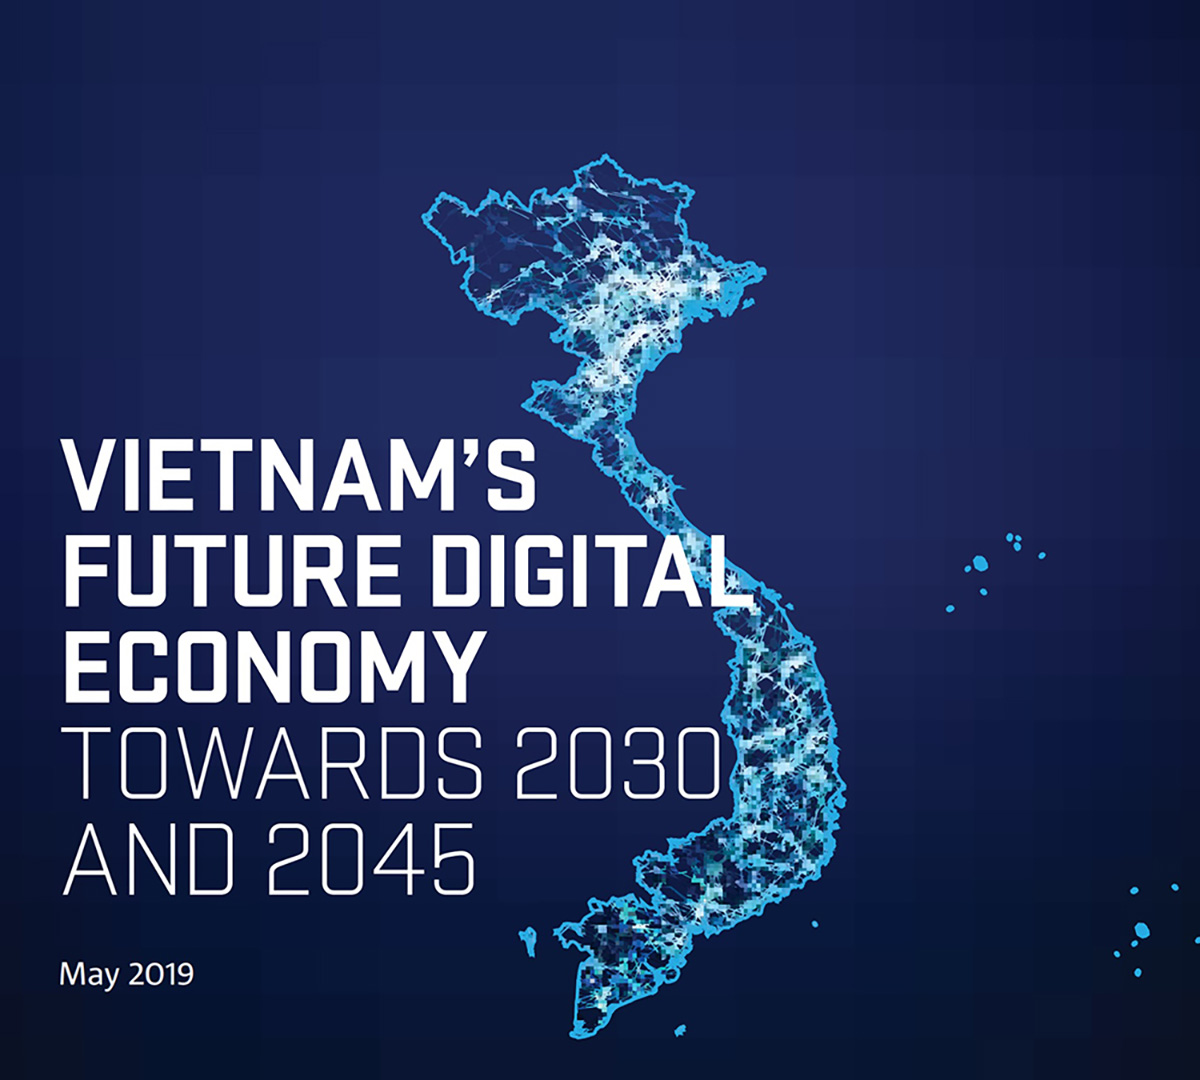 <strong>Cải tiến công cụ và số liệu-</strong> Data61 (CSIRO), tổ chức hàng đầu về dữ liệu và kỹ thuật số tại Úc đã hơp tác cùng MOST xây dựng một báo cáo dự báo các xu hướng tác động tới sự phát triển của nền kinh tế số Việt Nam cho đến năm 2045 và xác định bốn kịch bản tương lai có thể xảy ra.